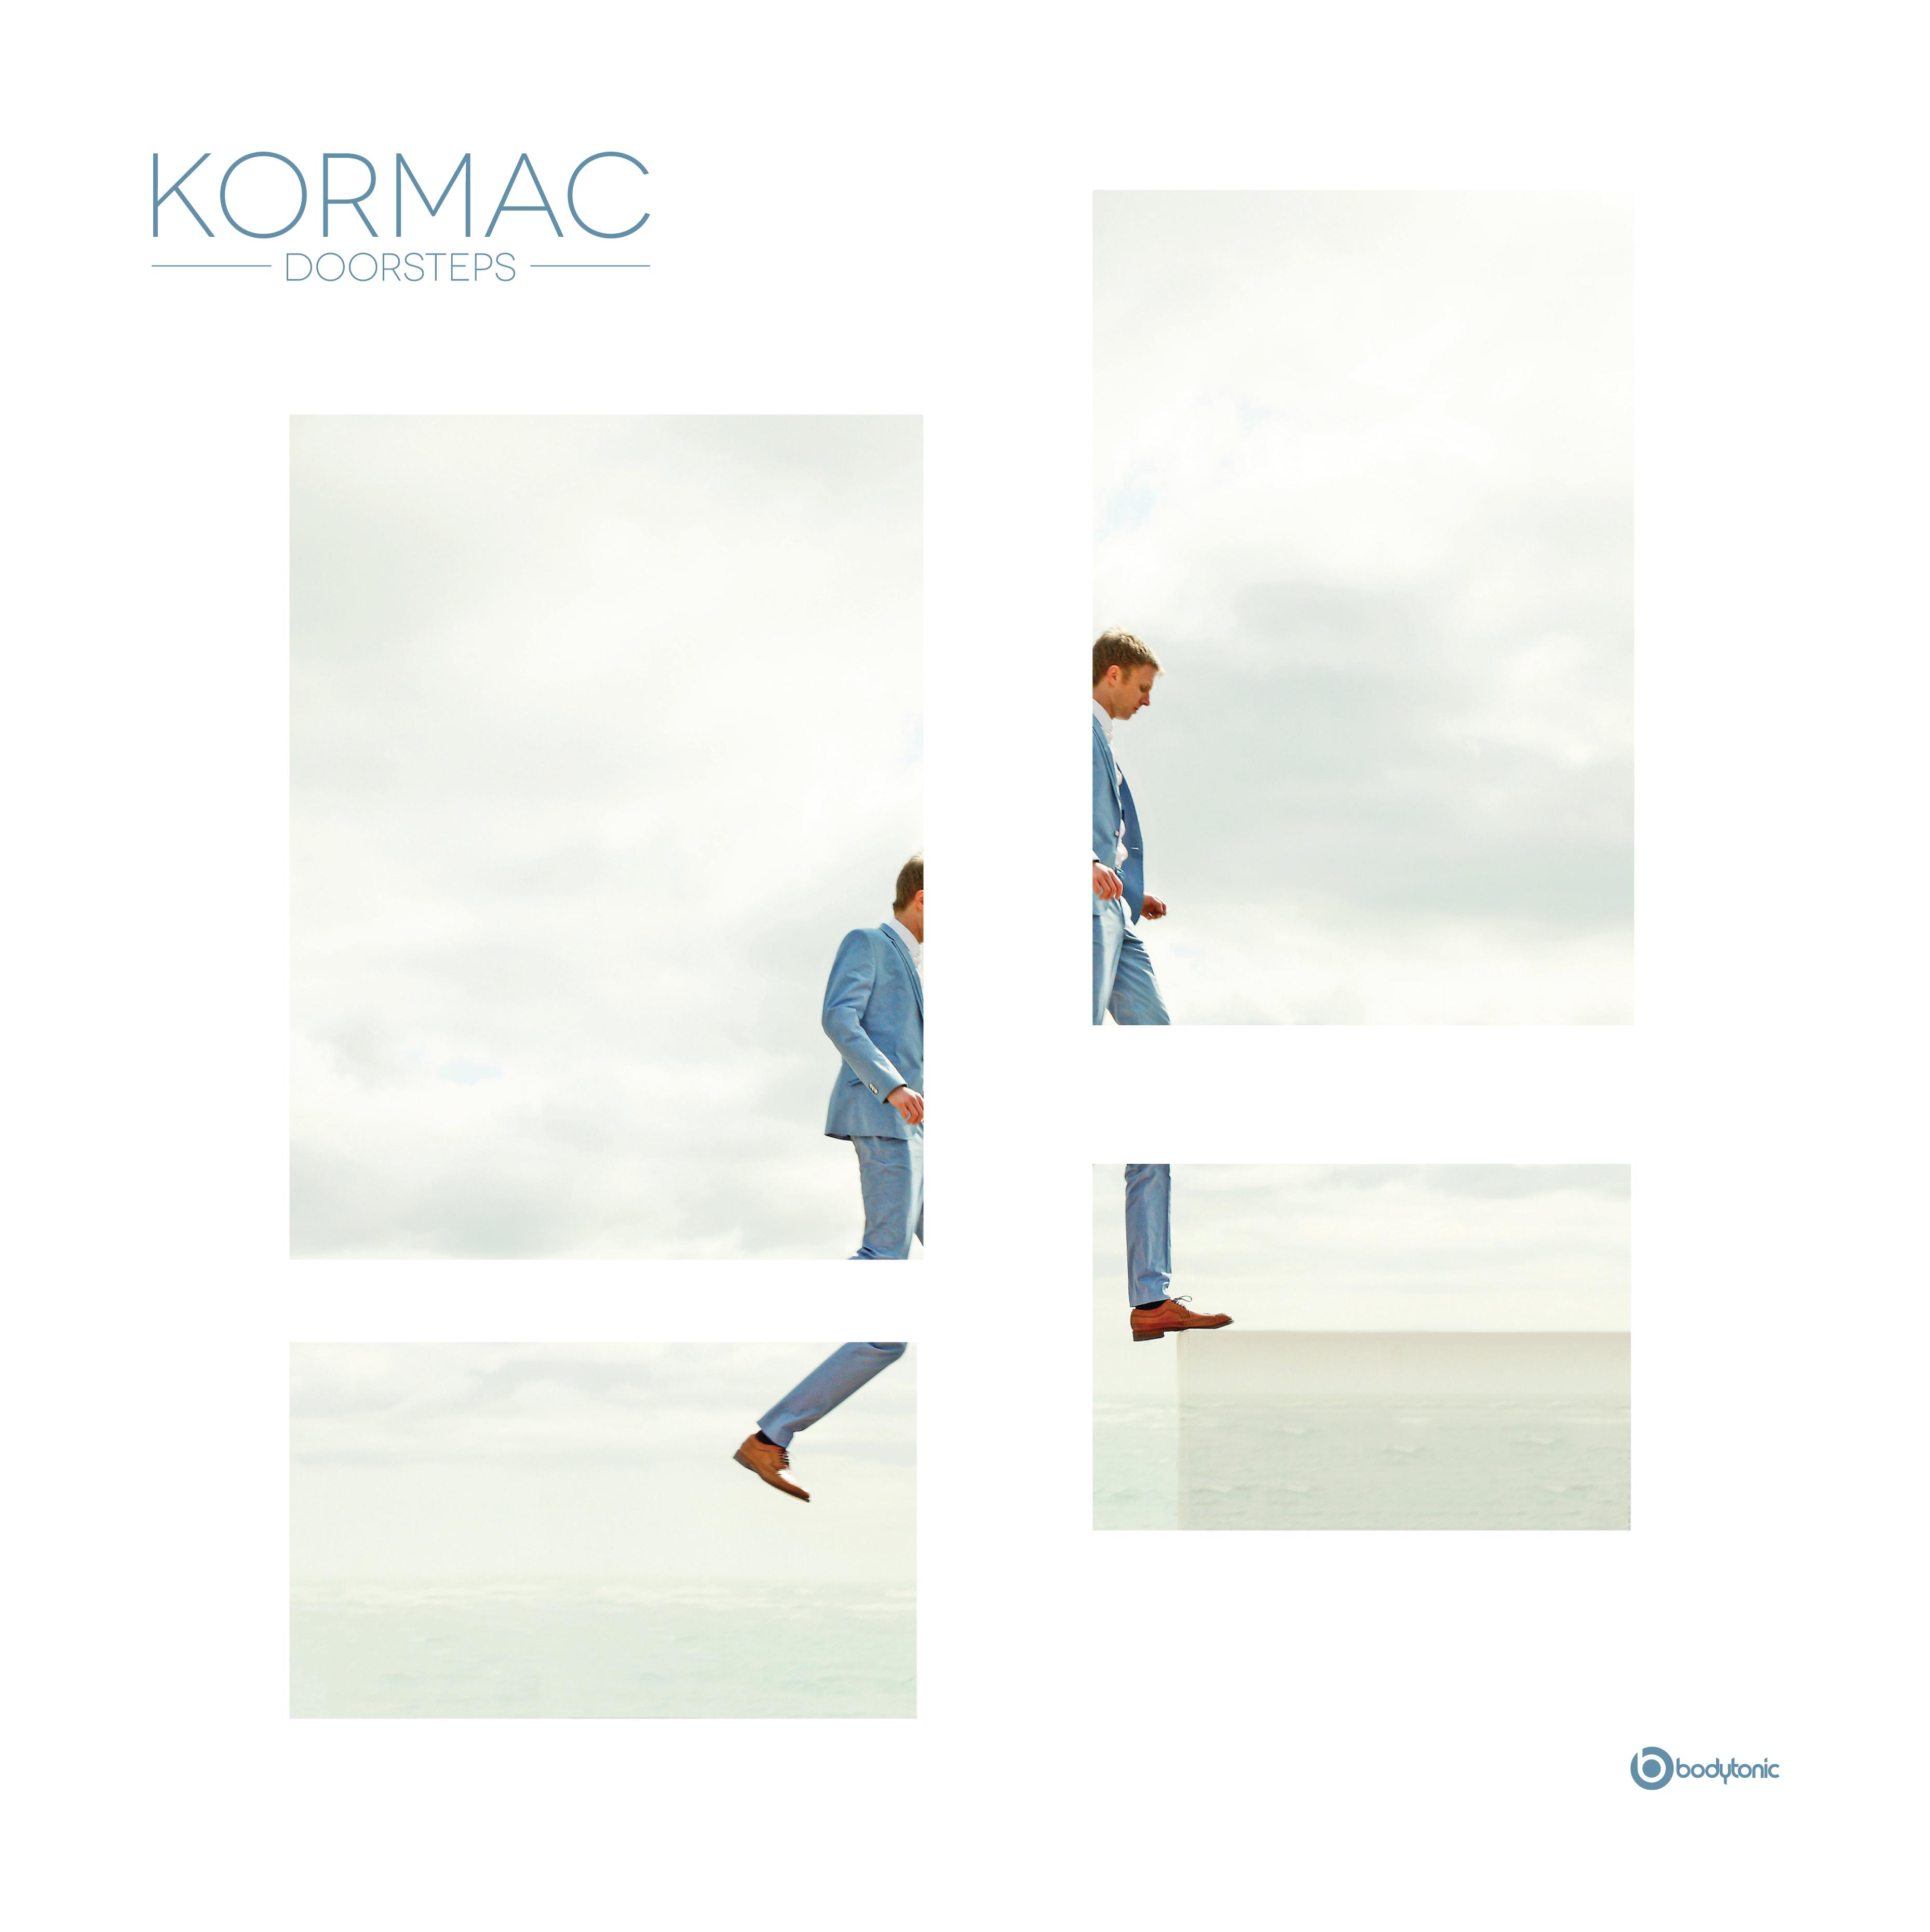 Kormac - Everything Around Me